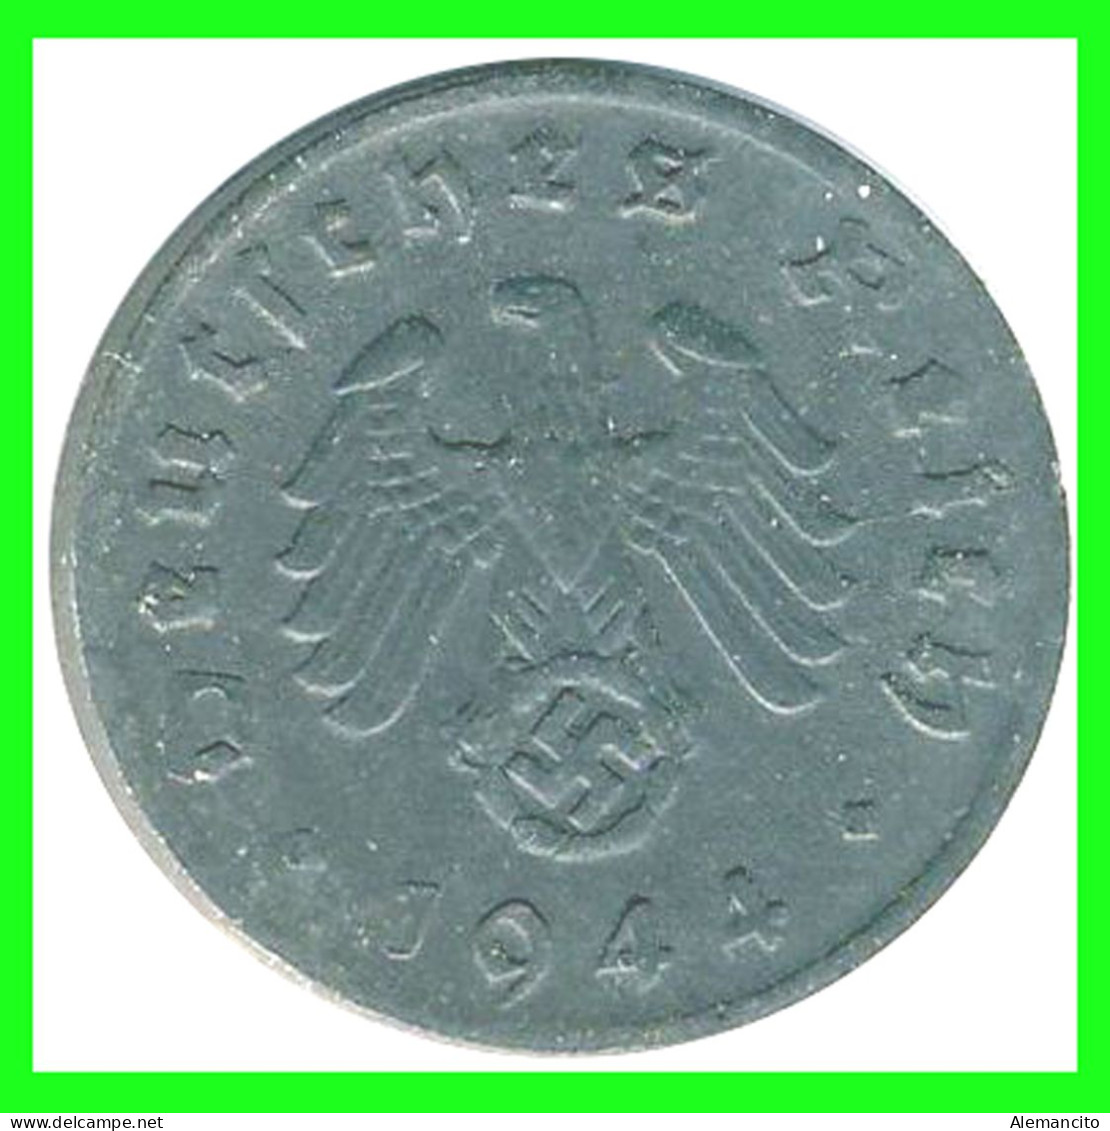 ALEMANIA - GERMANY SERIE DE 6 MONEDAS DE 1 REICHSPFNNIG TERCER REICHS ( AÑO 1944 CECAS ( - A - B -D - E - F - G ) - 1 Reichspfennig